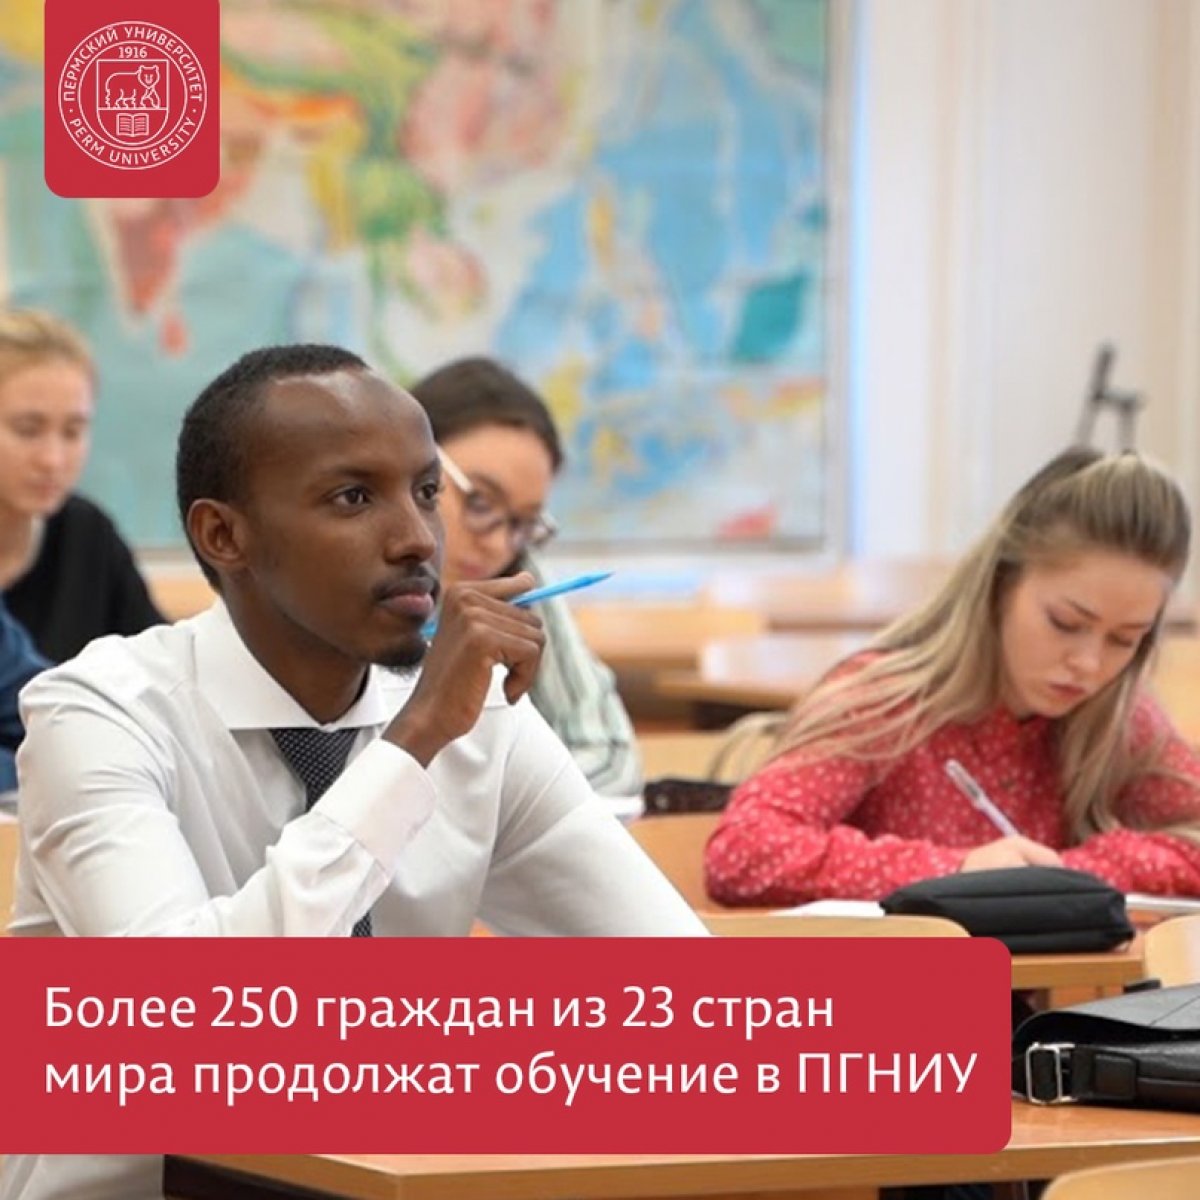 Пермский университет ожидает увеличения количества иностранных студентов в новом учебном году